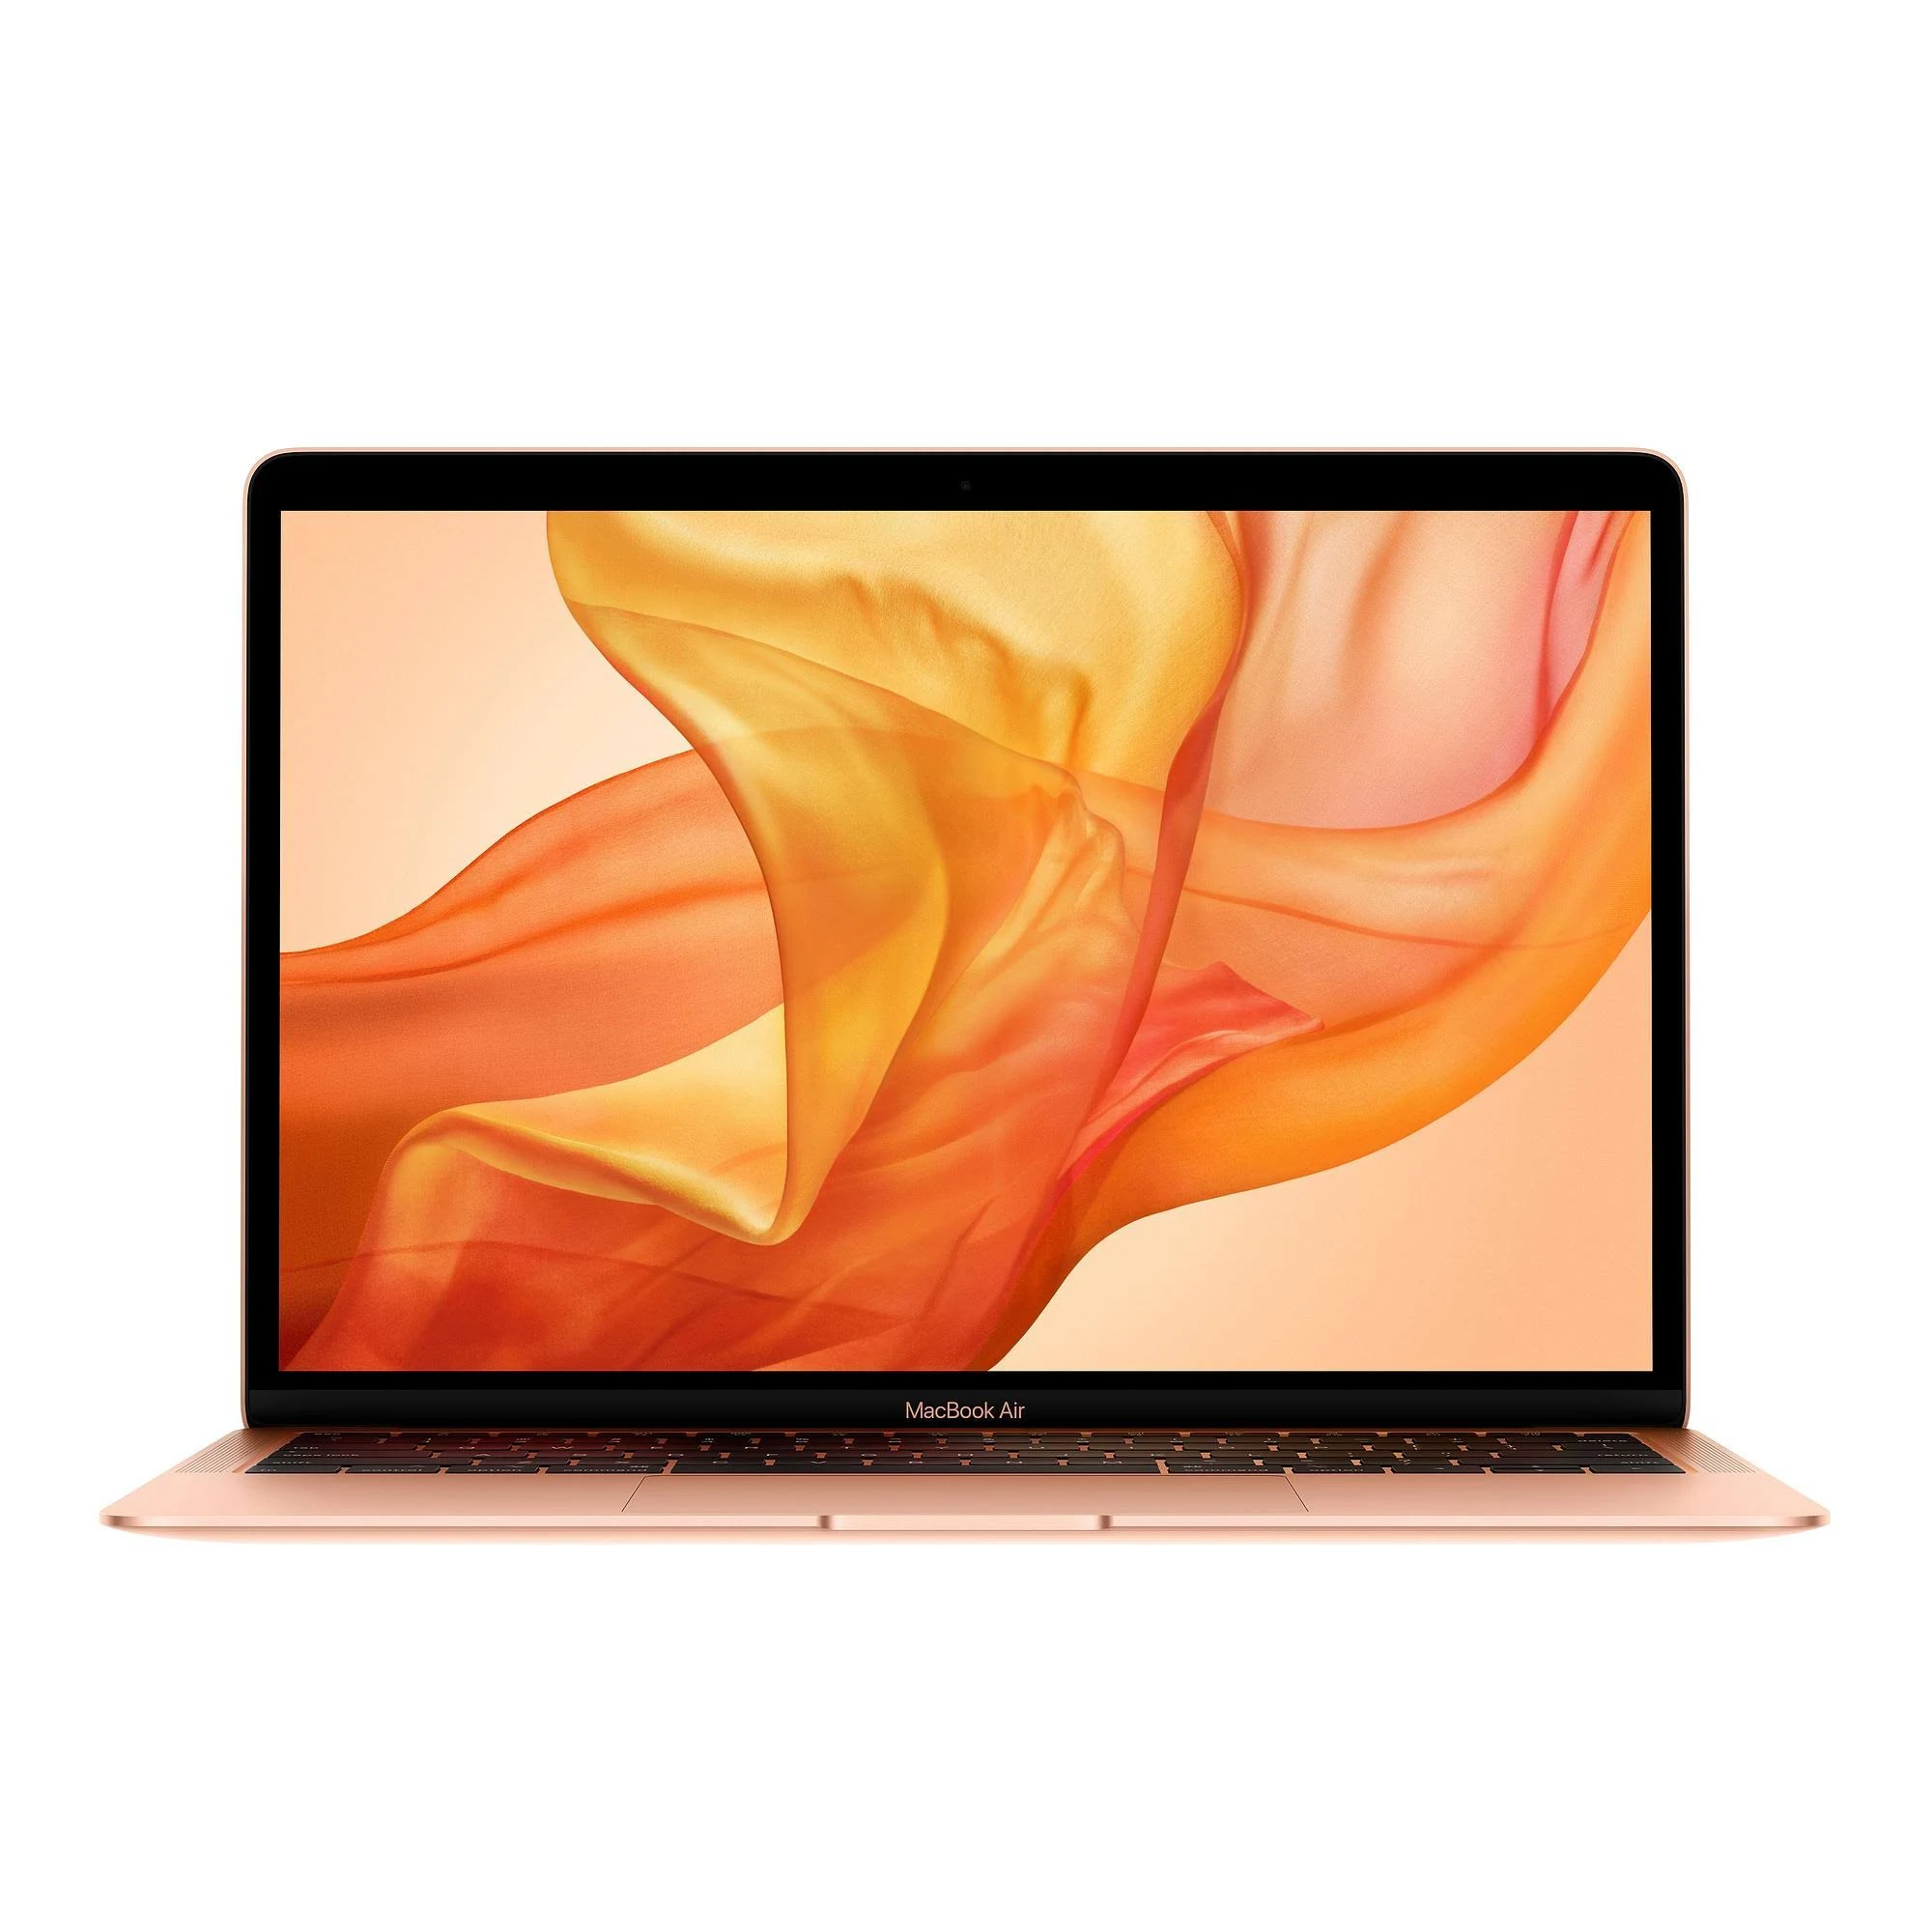 MacBook Air i3 1.1GHz 13 inch 2020 - 512GB SSD - 8GB Ram